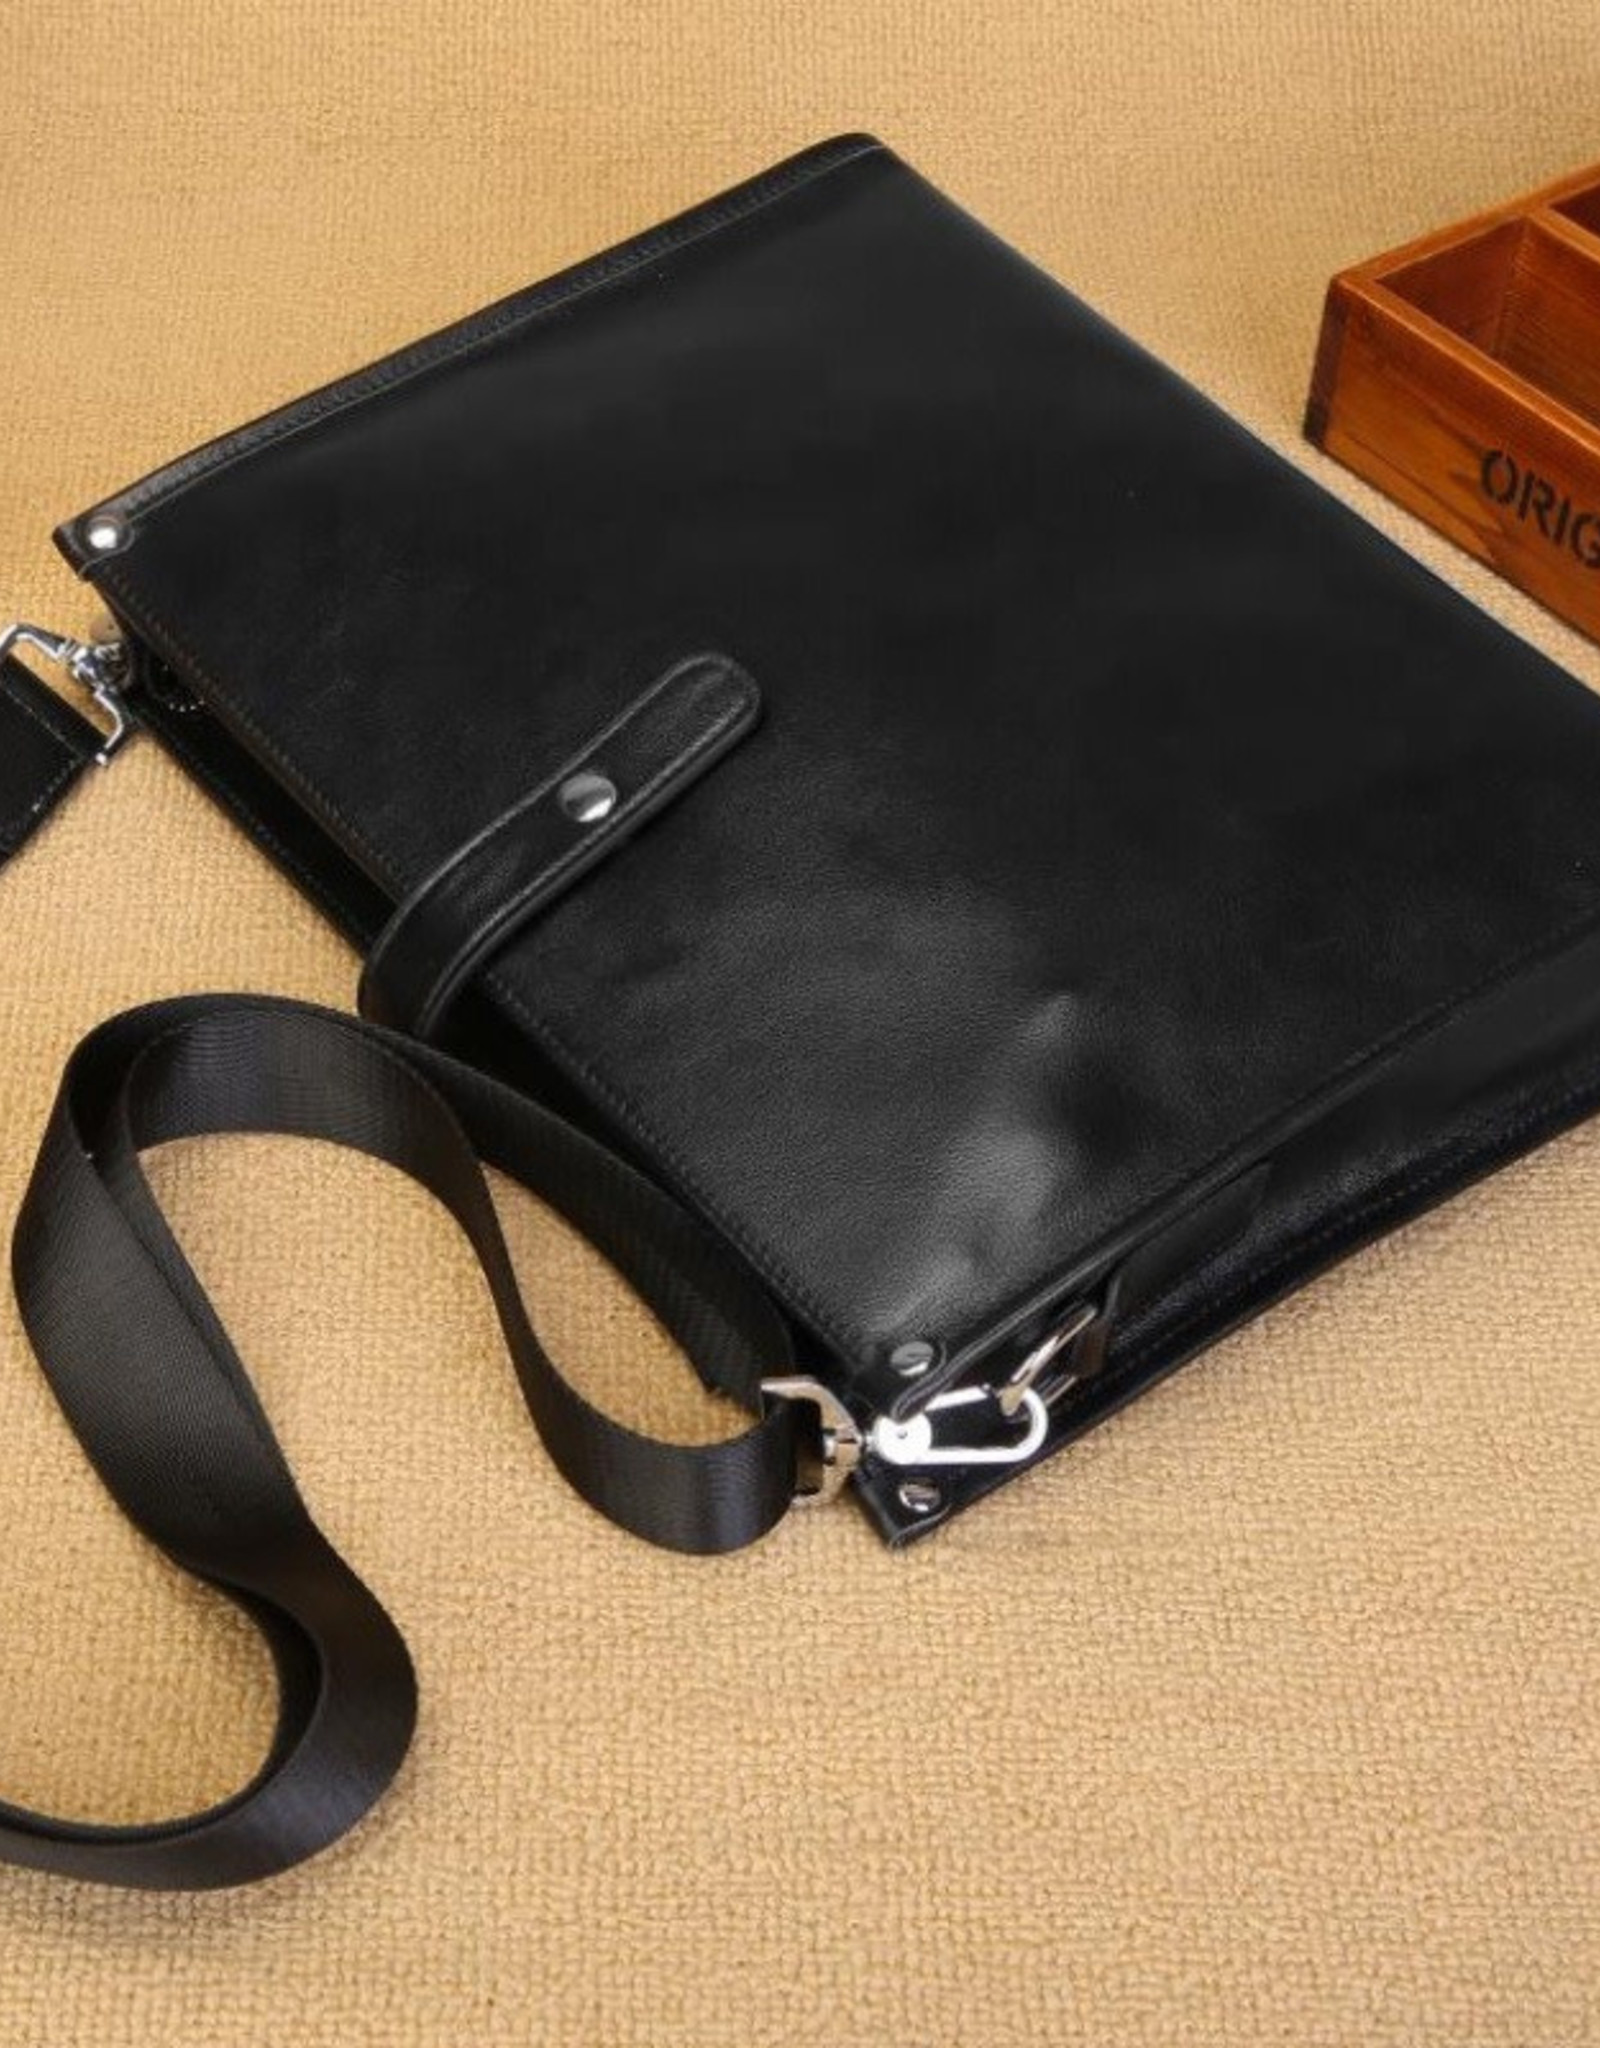 Gavin Shoulder Strap Bag Genuine Leather